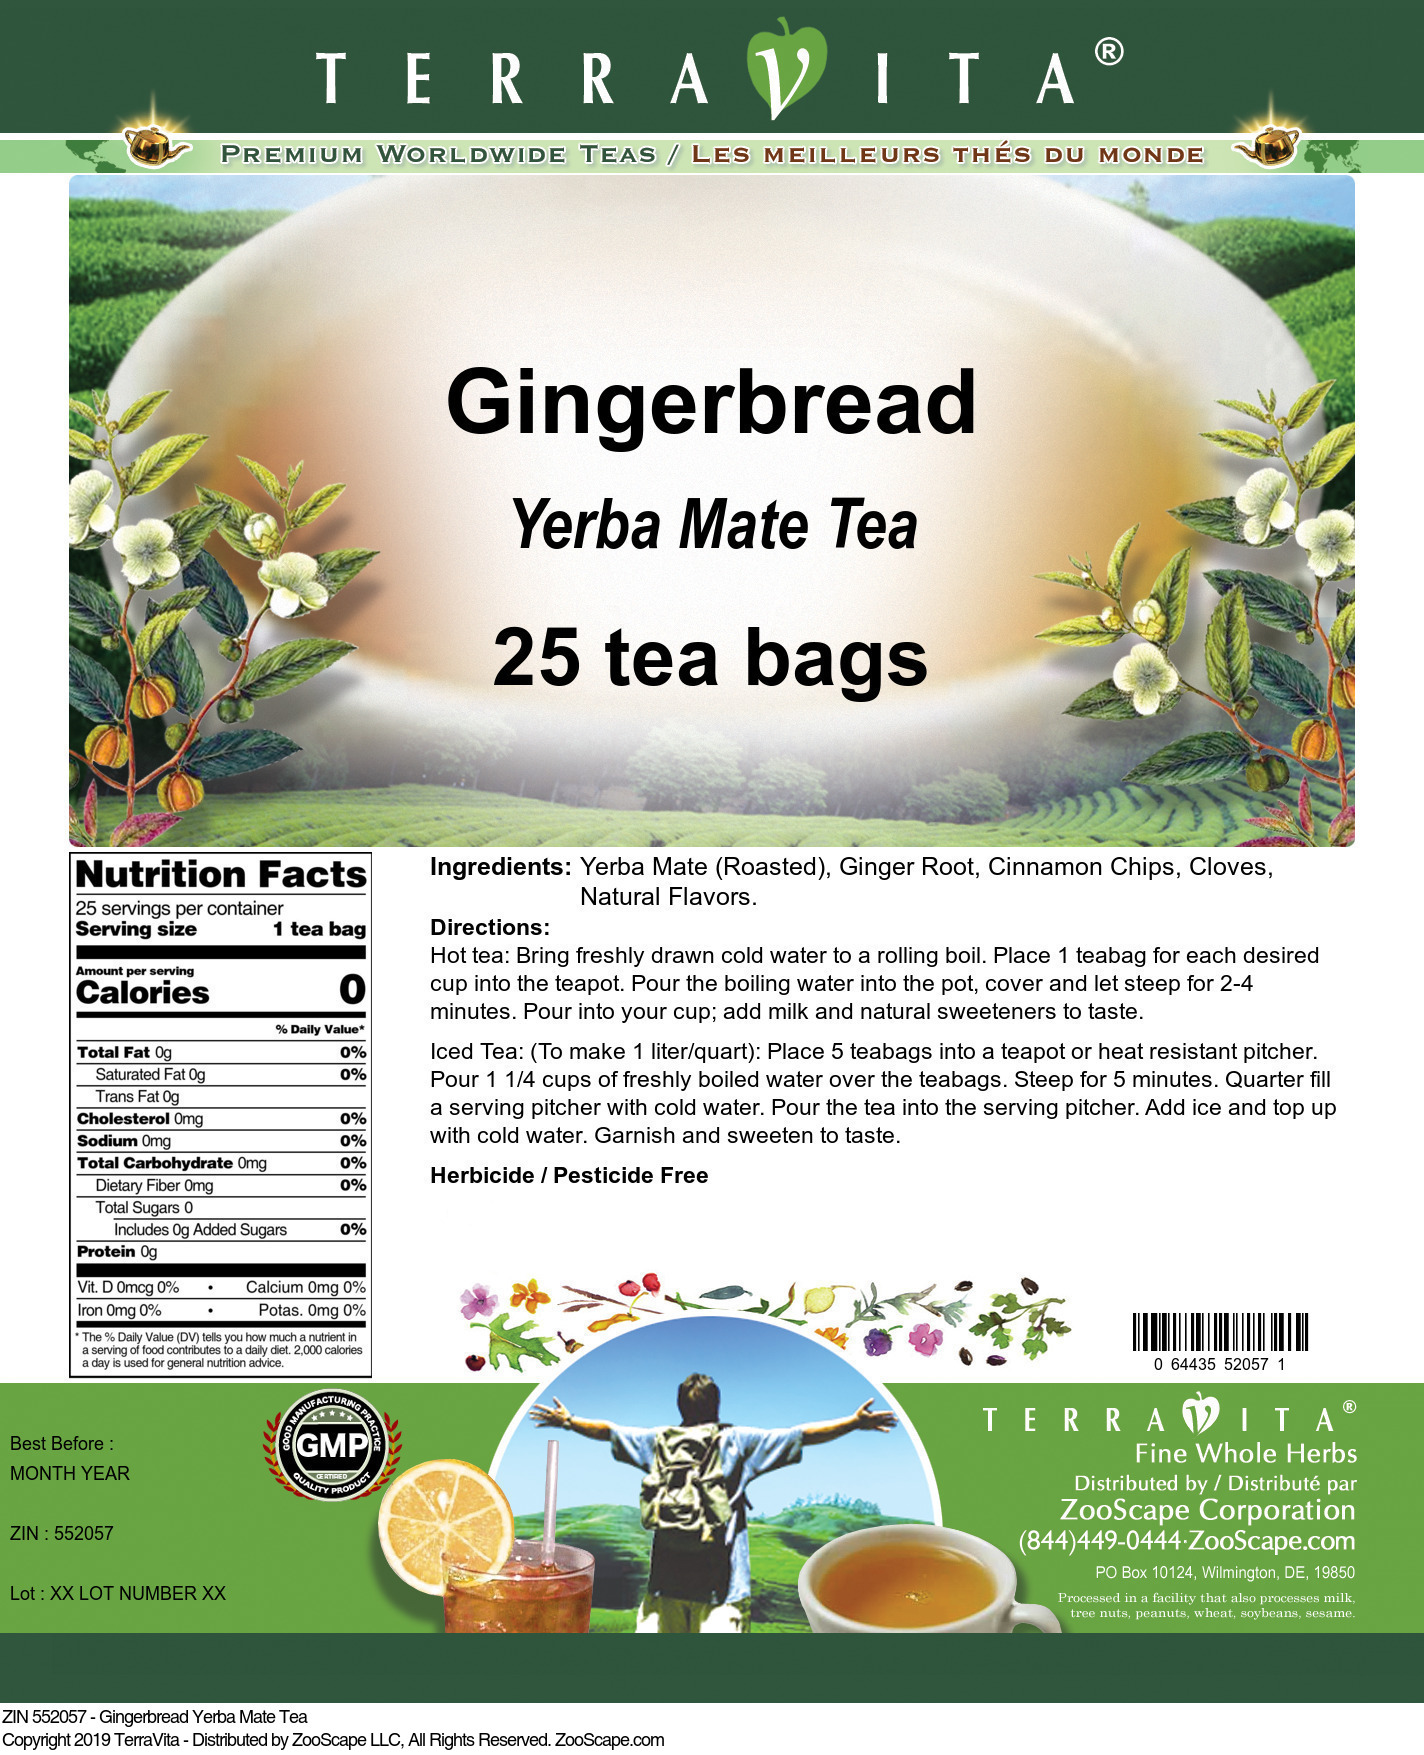 Gingerbread Yerba Mate Tea - Label